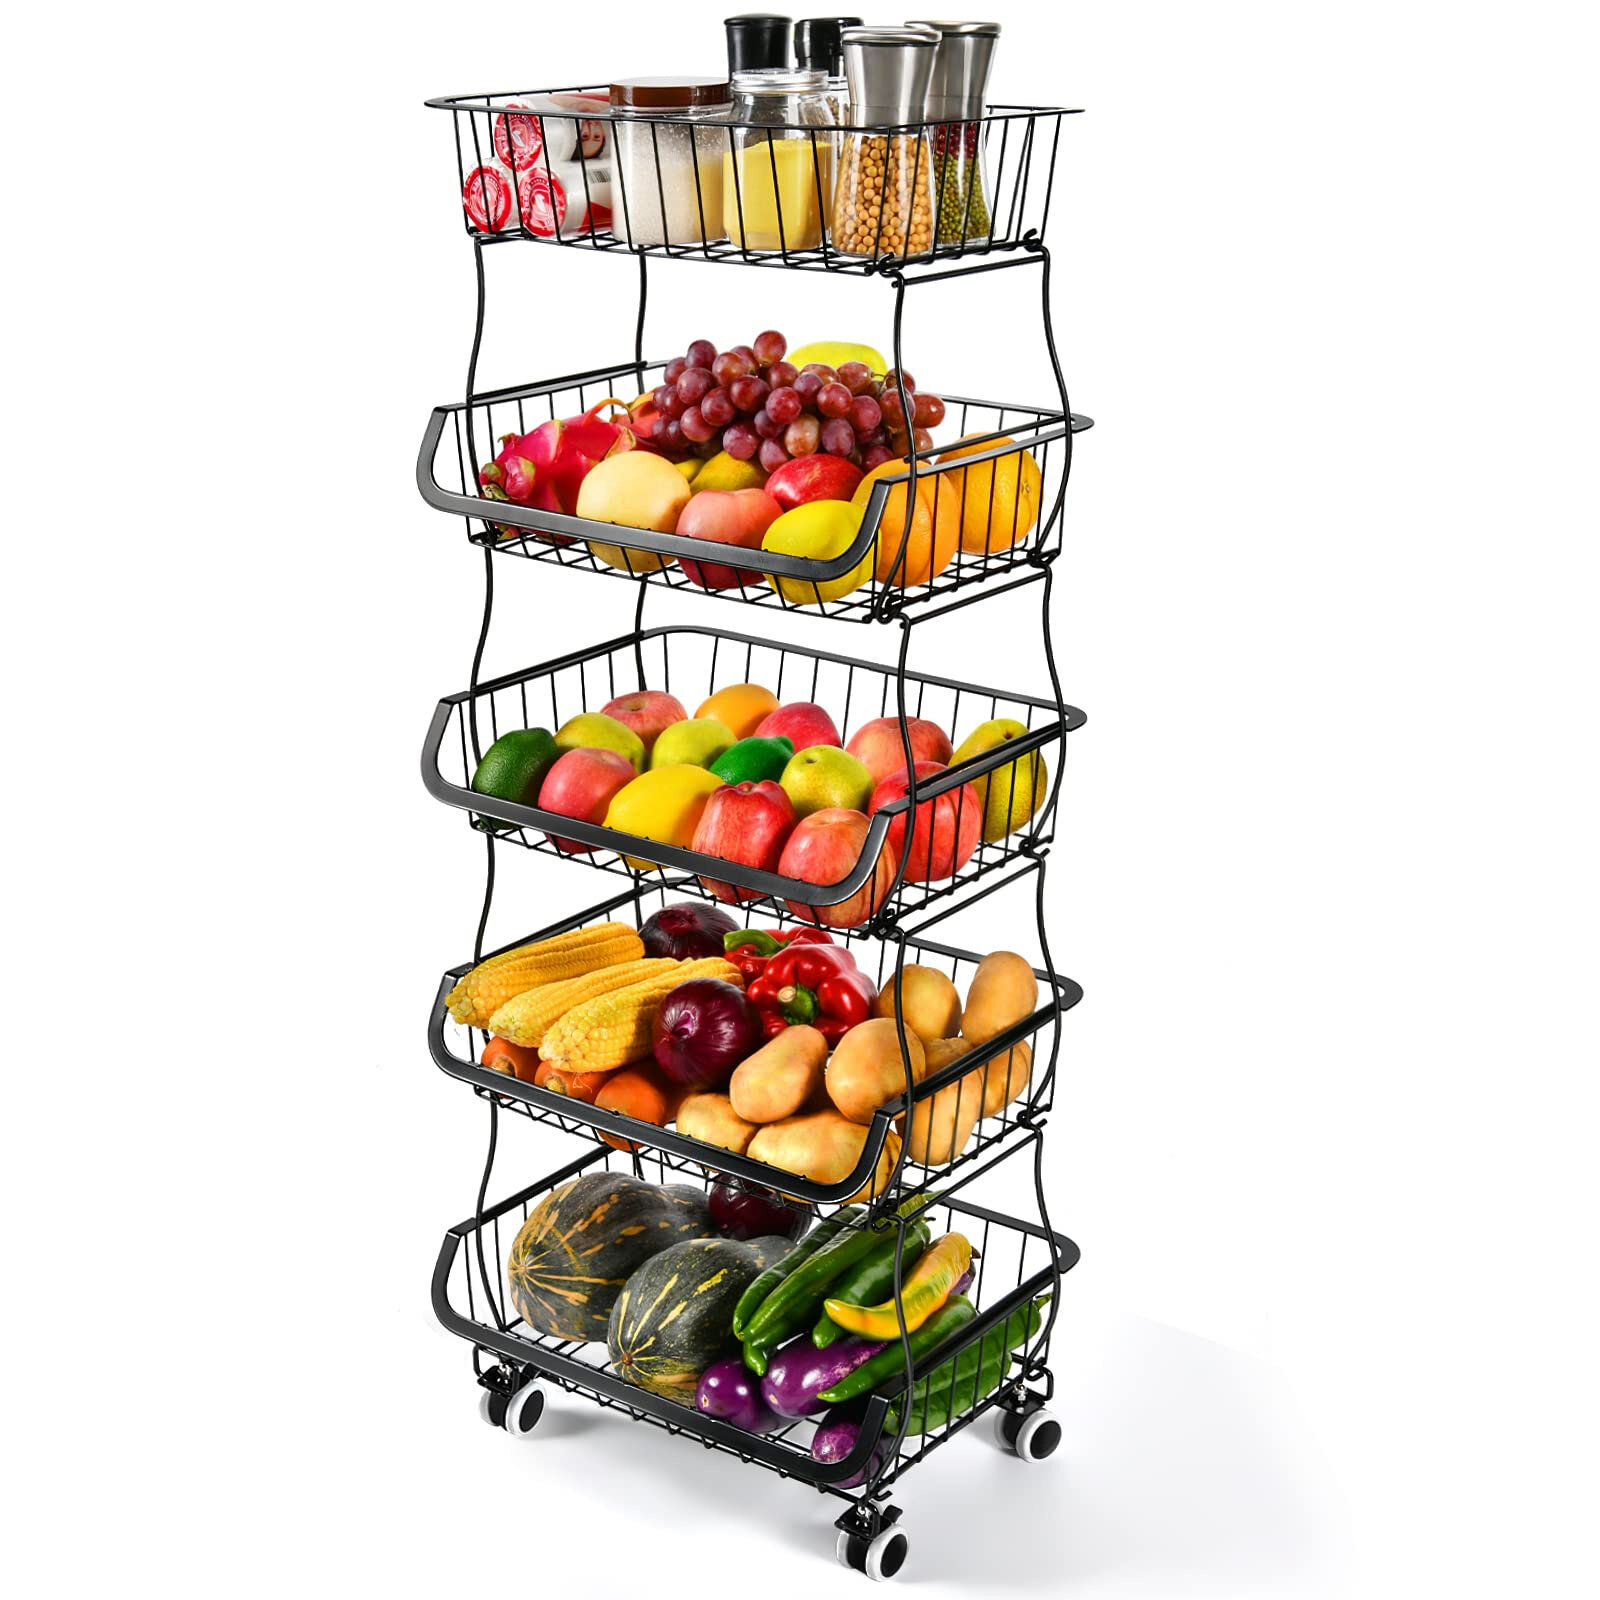 MAJOZ0 4Pcs Fruit Vegetable Storage Rack Baskets Stackable Multifunction Storage Basket for Kitchen Bathroom Living Room